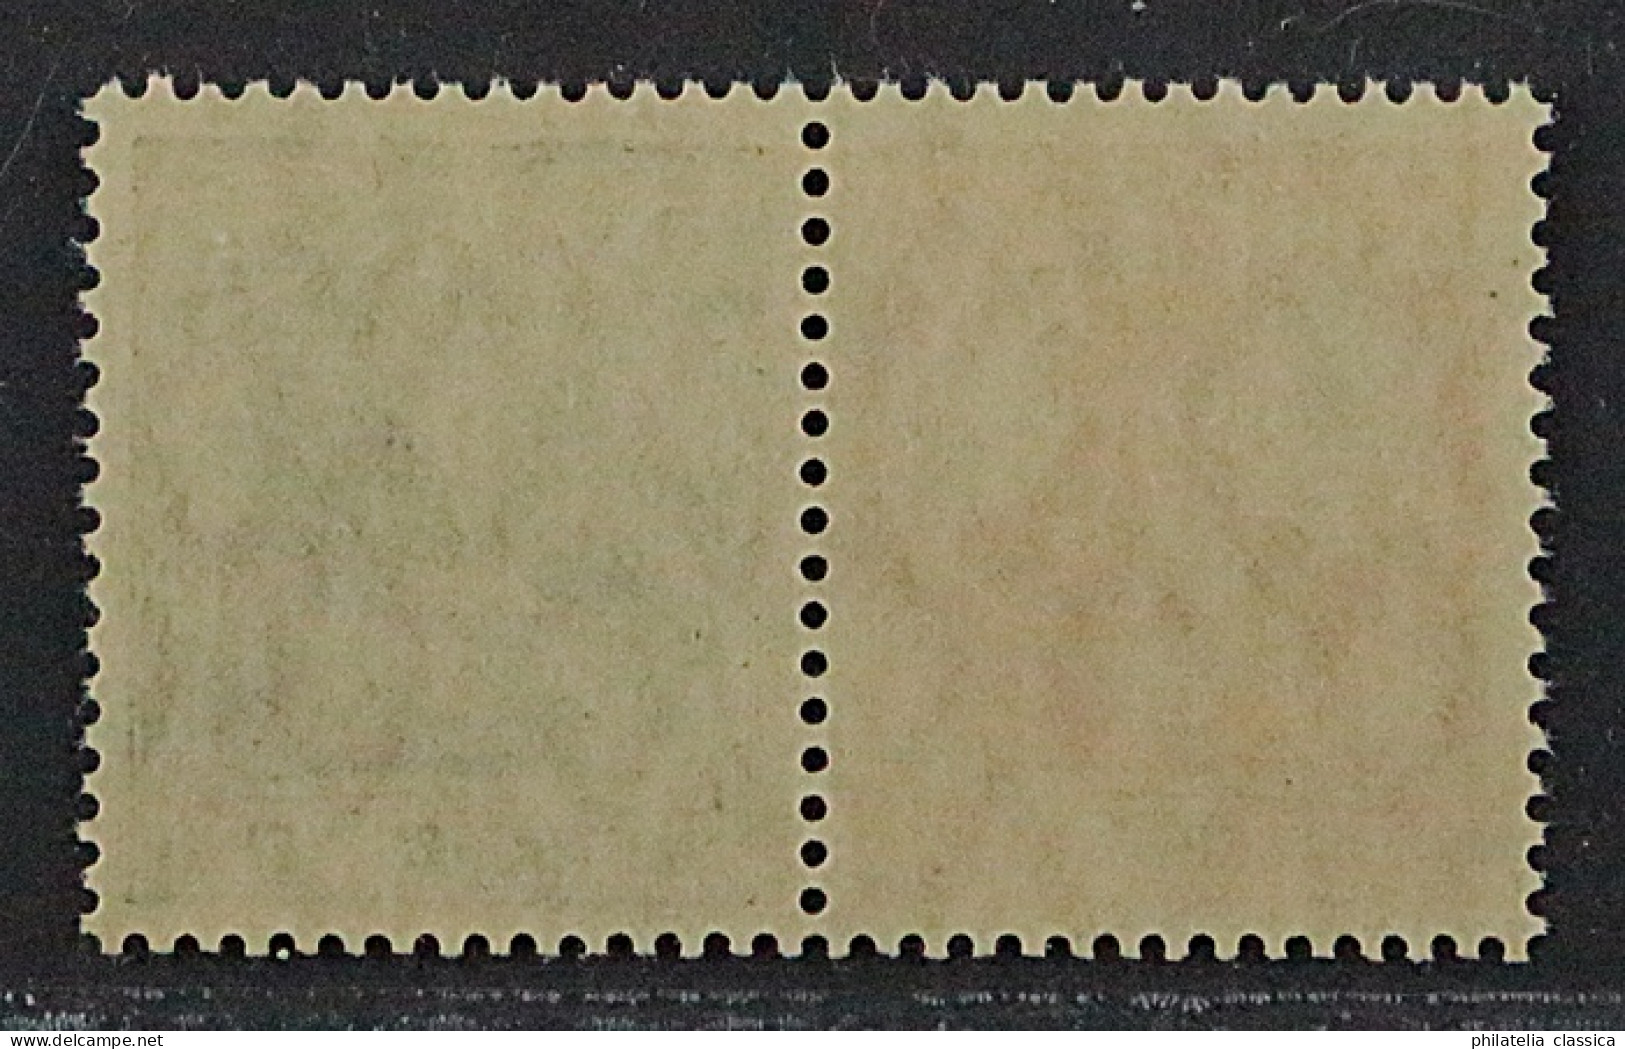 1918, Dt.Reich Zusammendruck W 6 Ab ** Germania 7 1/2 Pfg. + 5 Pfg, KW 200,-€ - Carnets & Se-tenant